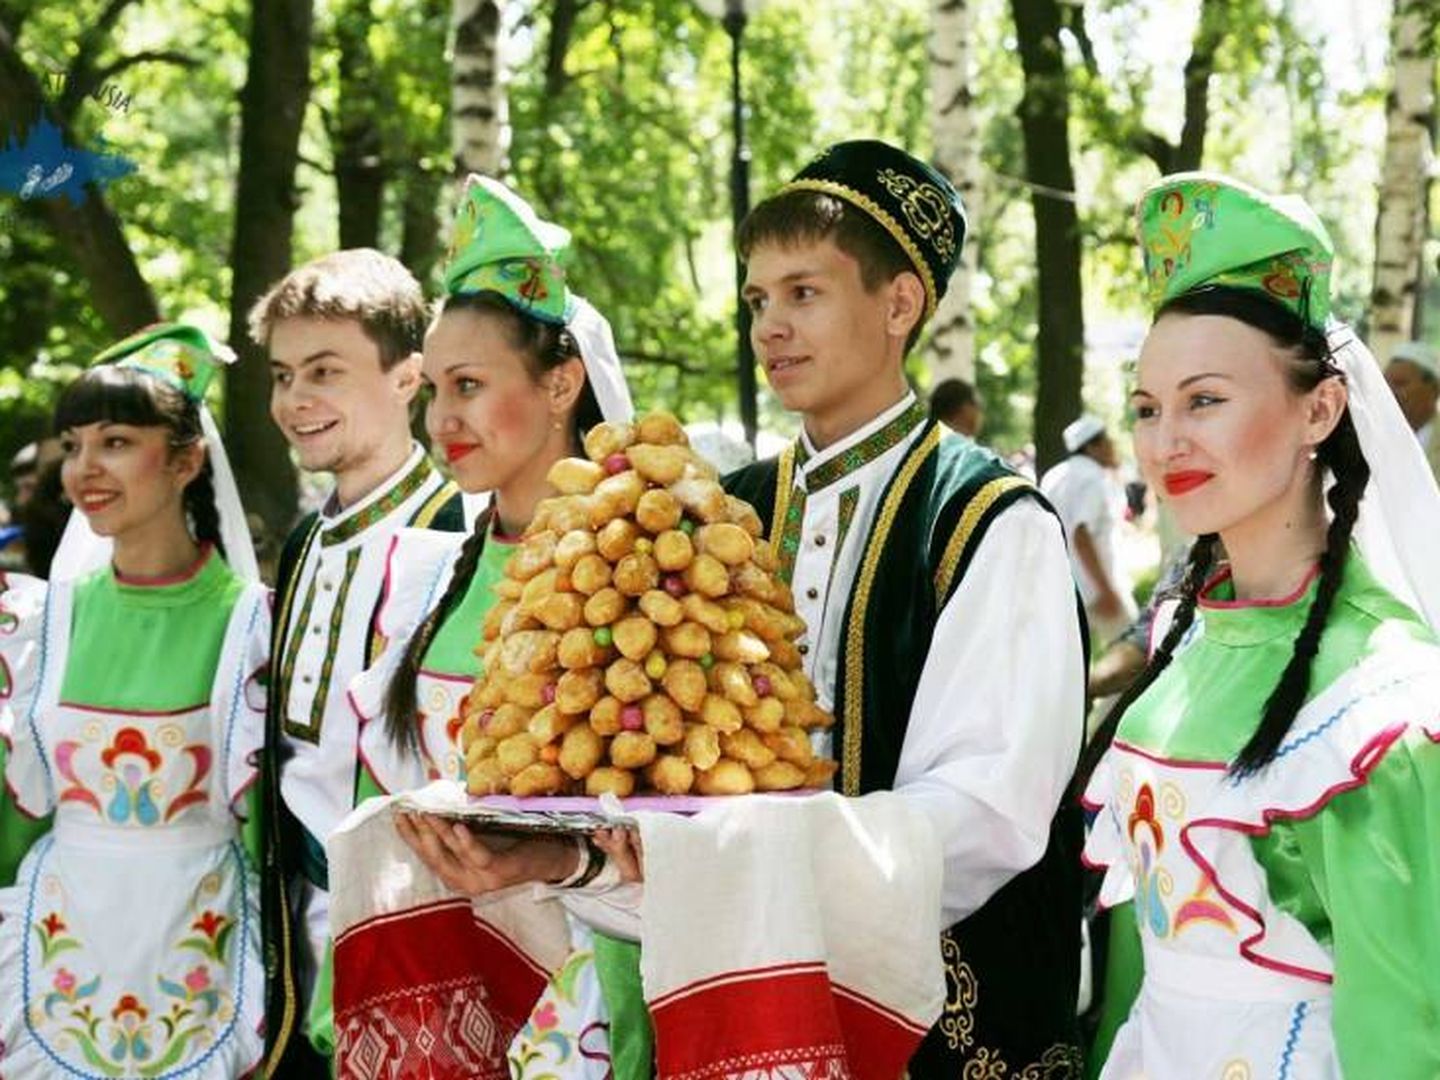 Tártaros ataviados con sus vestidos tradicionales